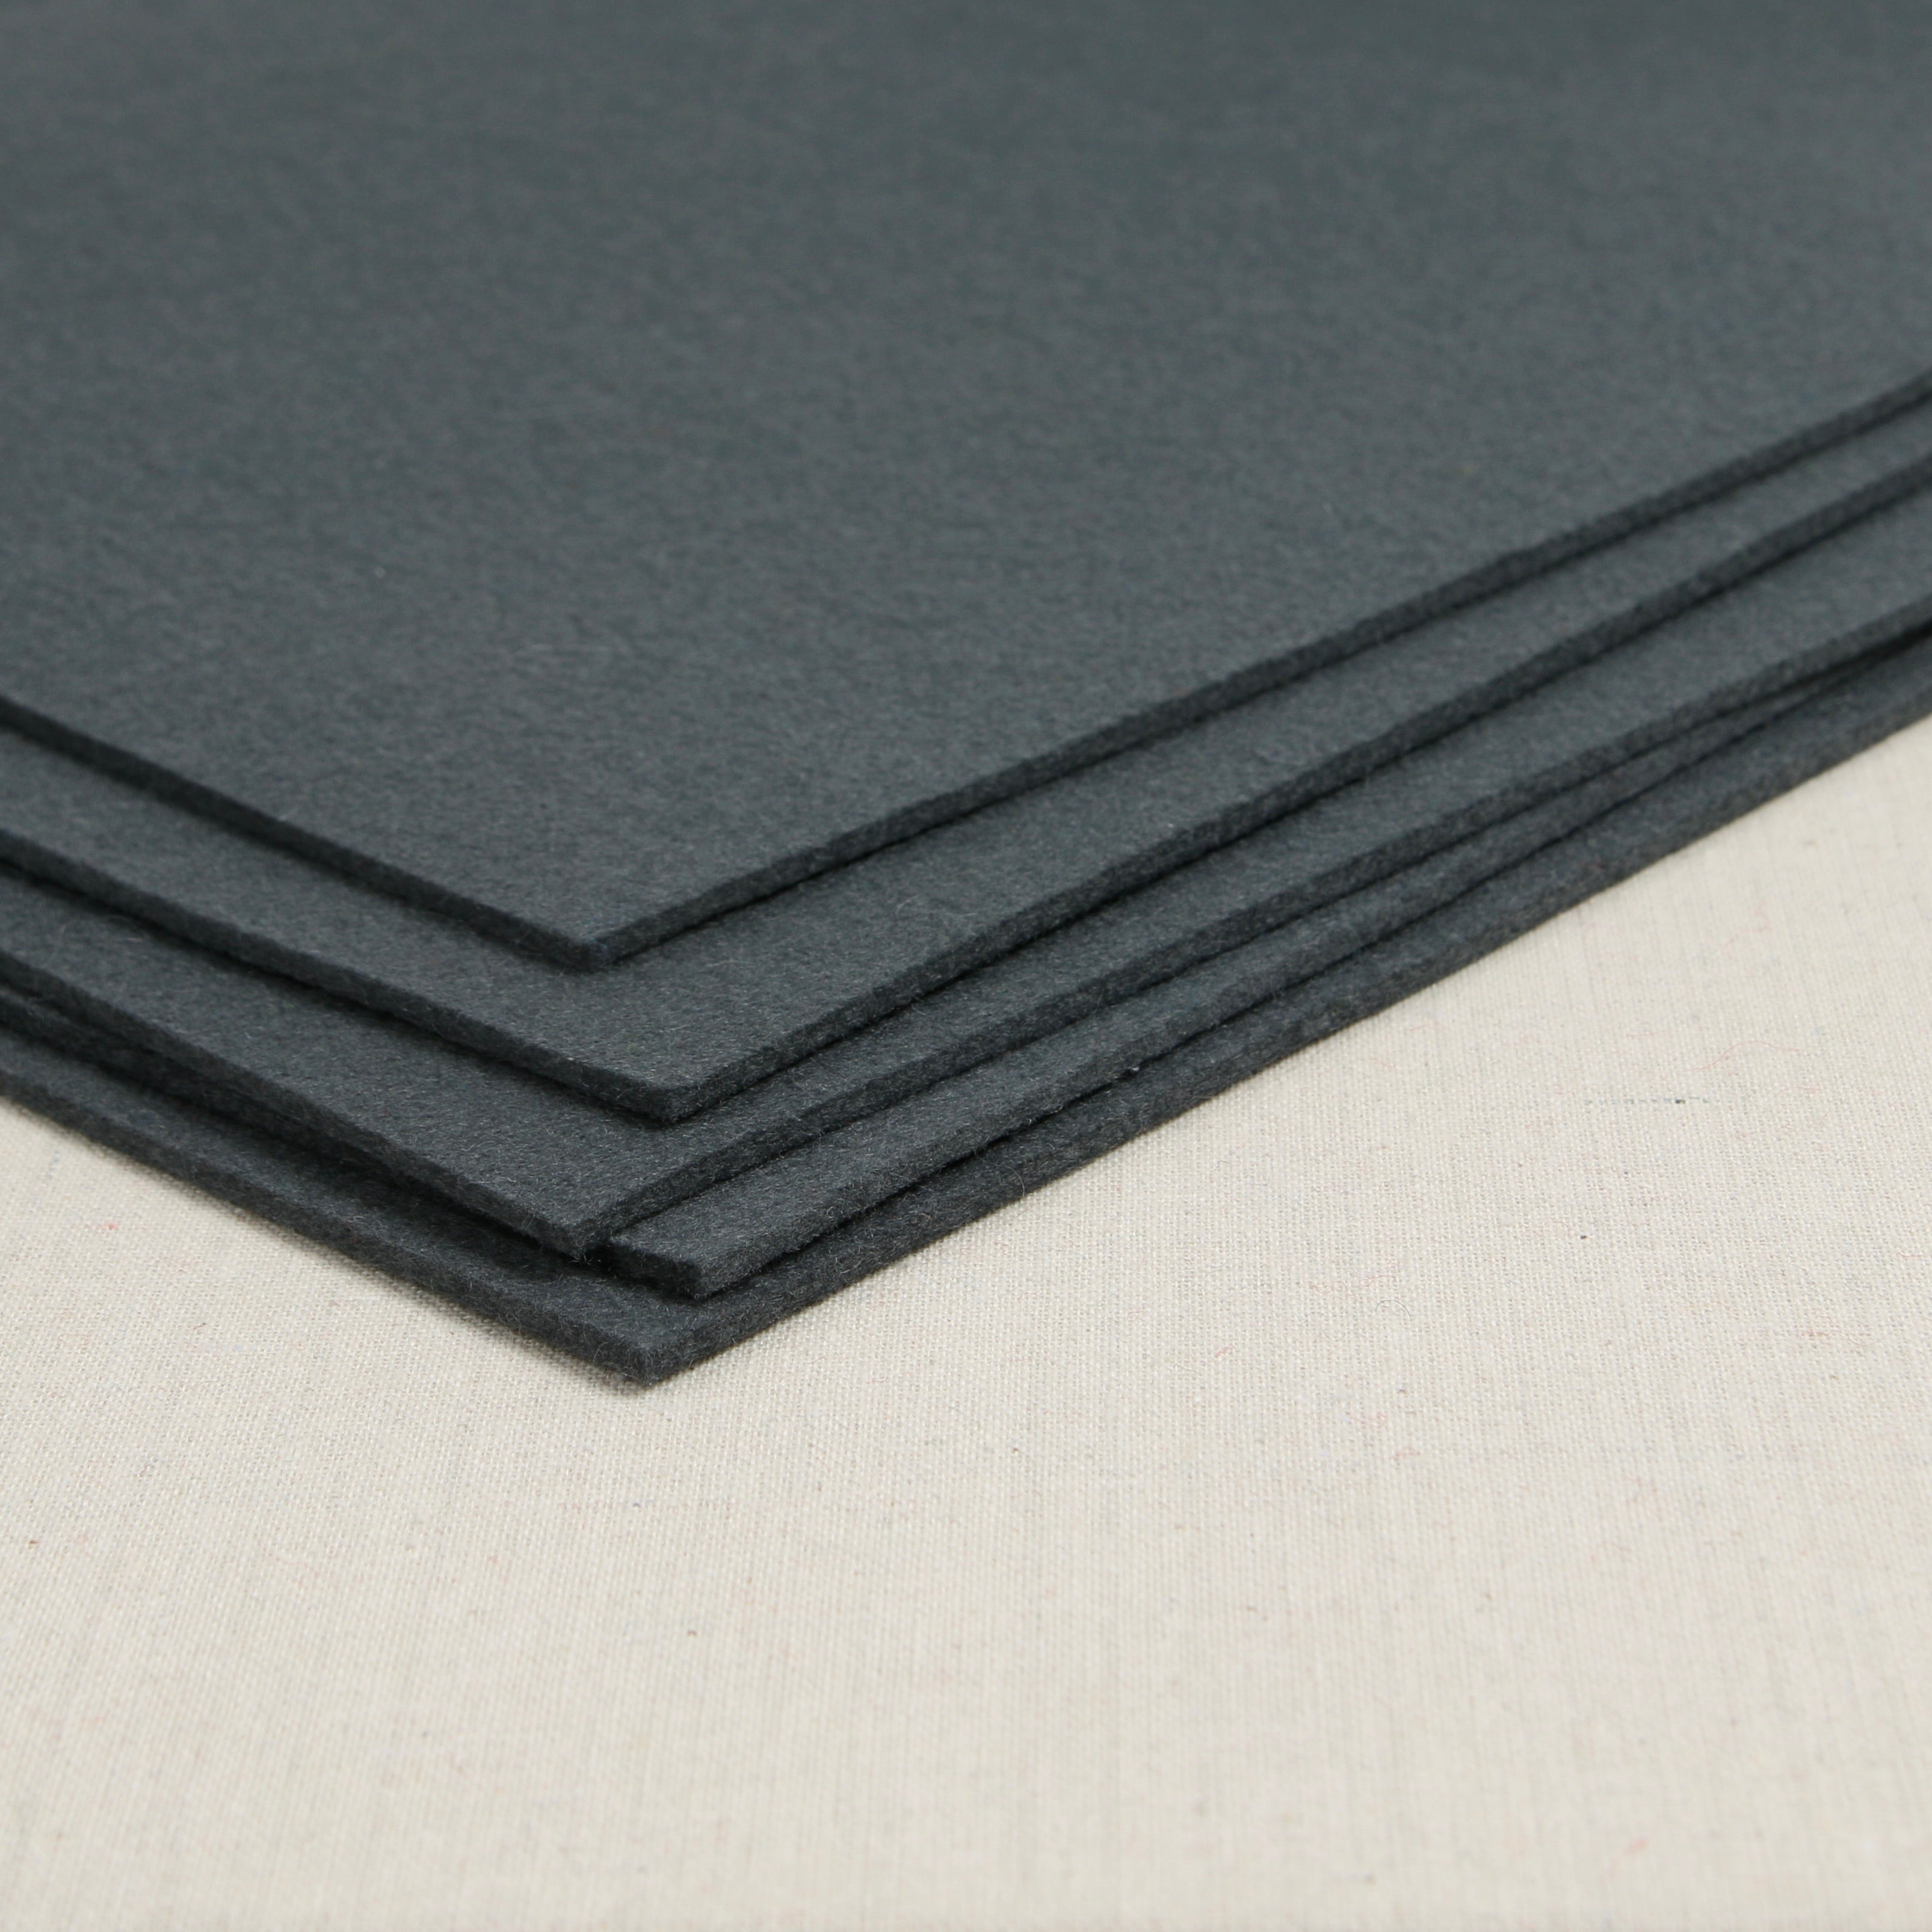 12 x 72 x 1 Gray Pressed Wool Felt Sheet